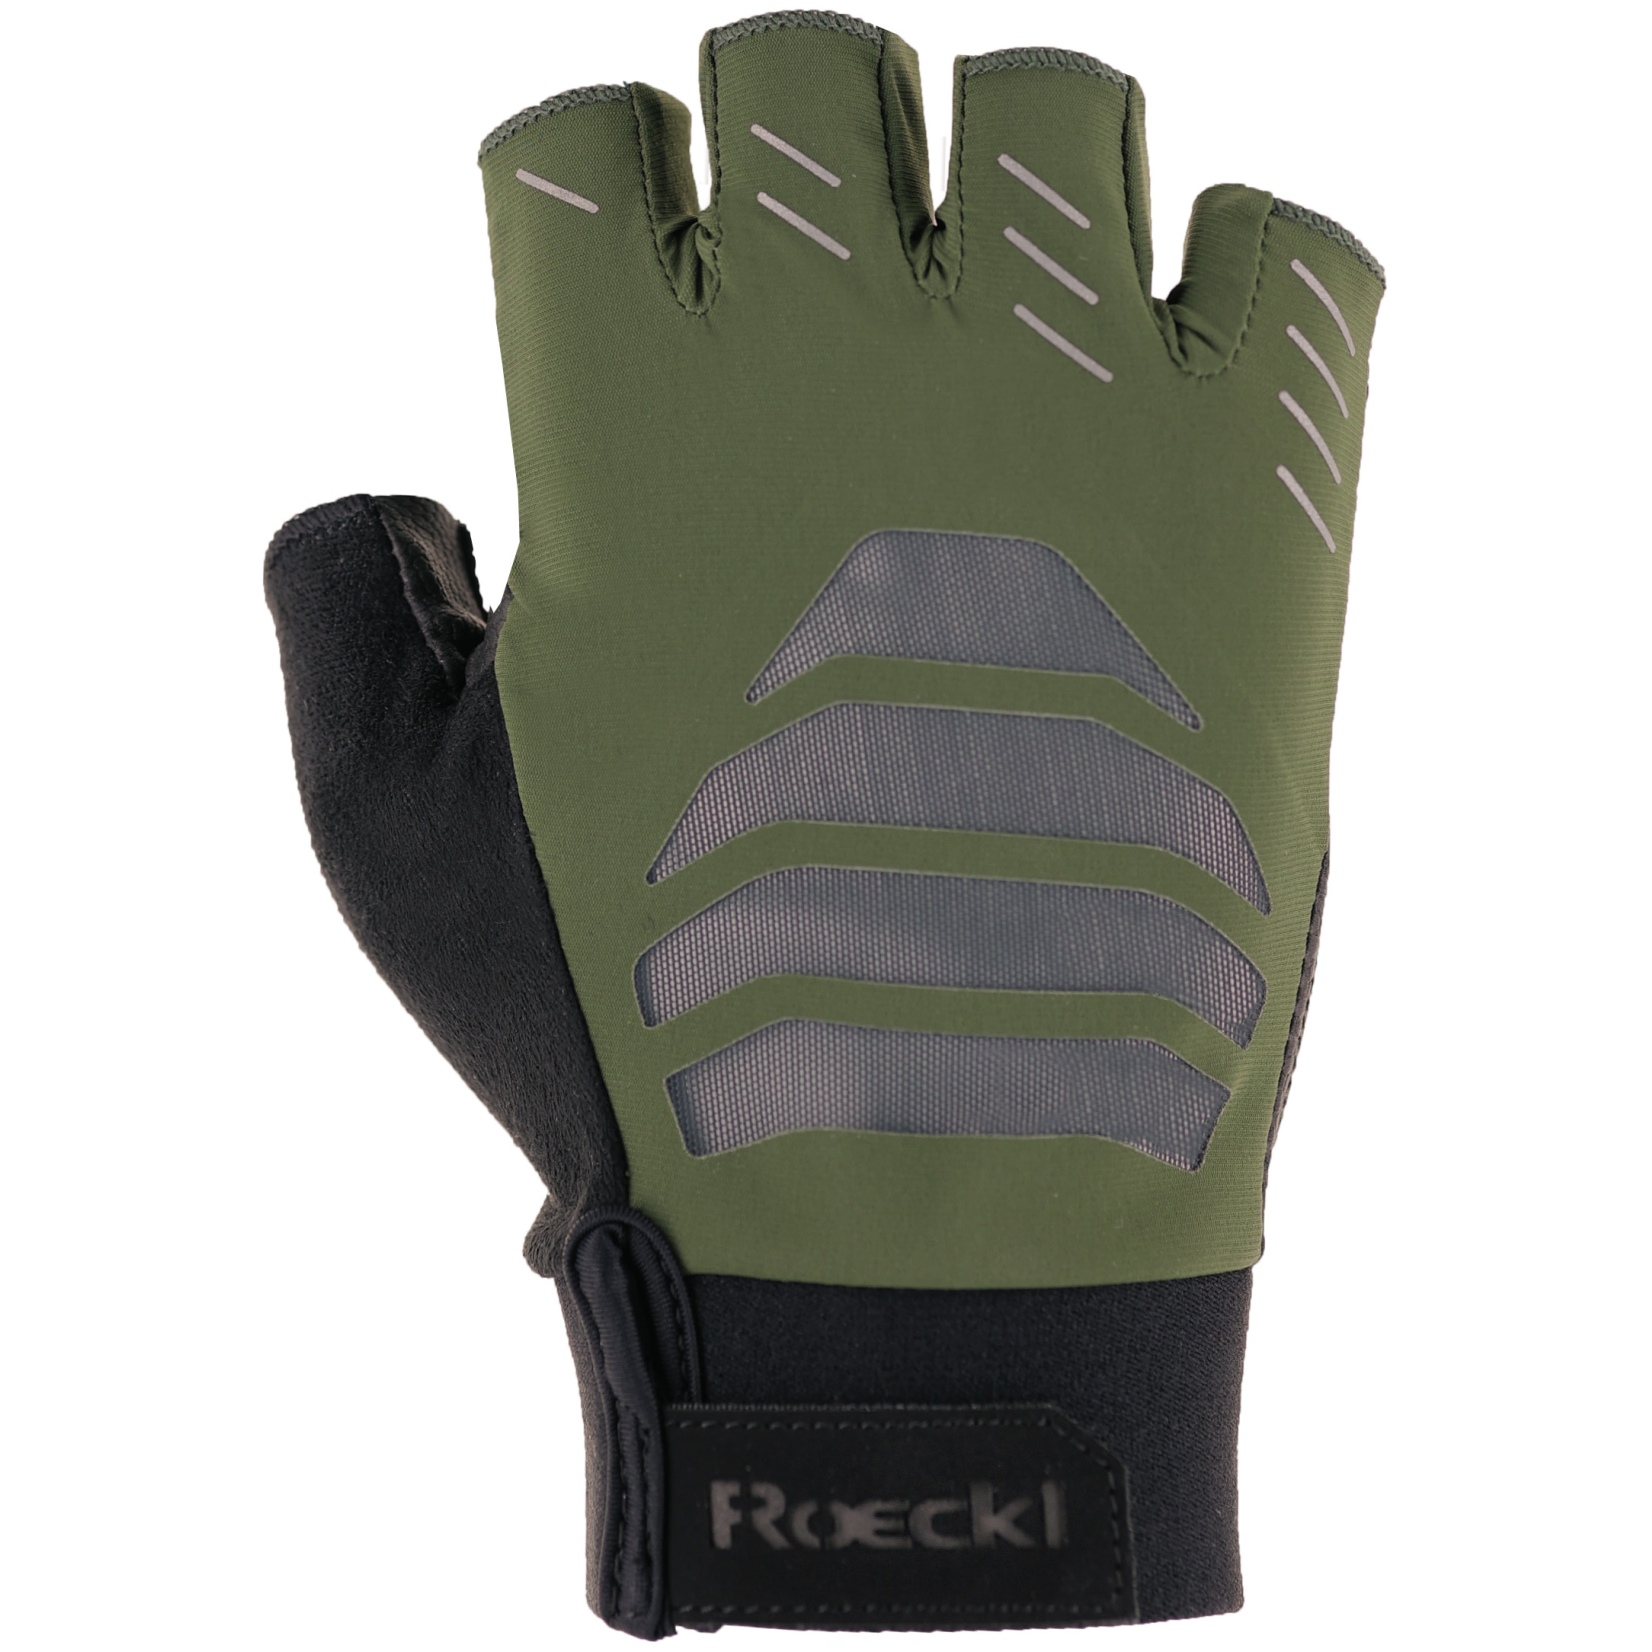 Productfoto van Roeckl Sports Irai Fietshandschoenen - chive green 6830